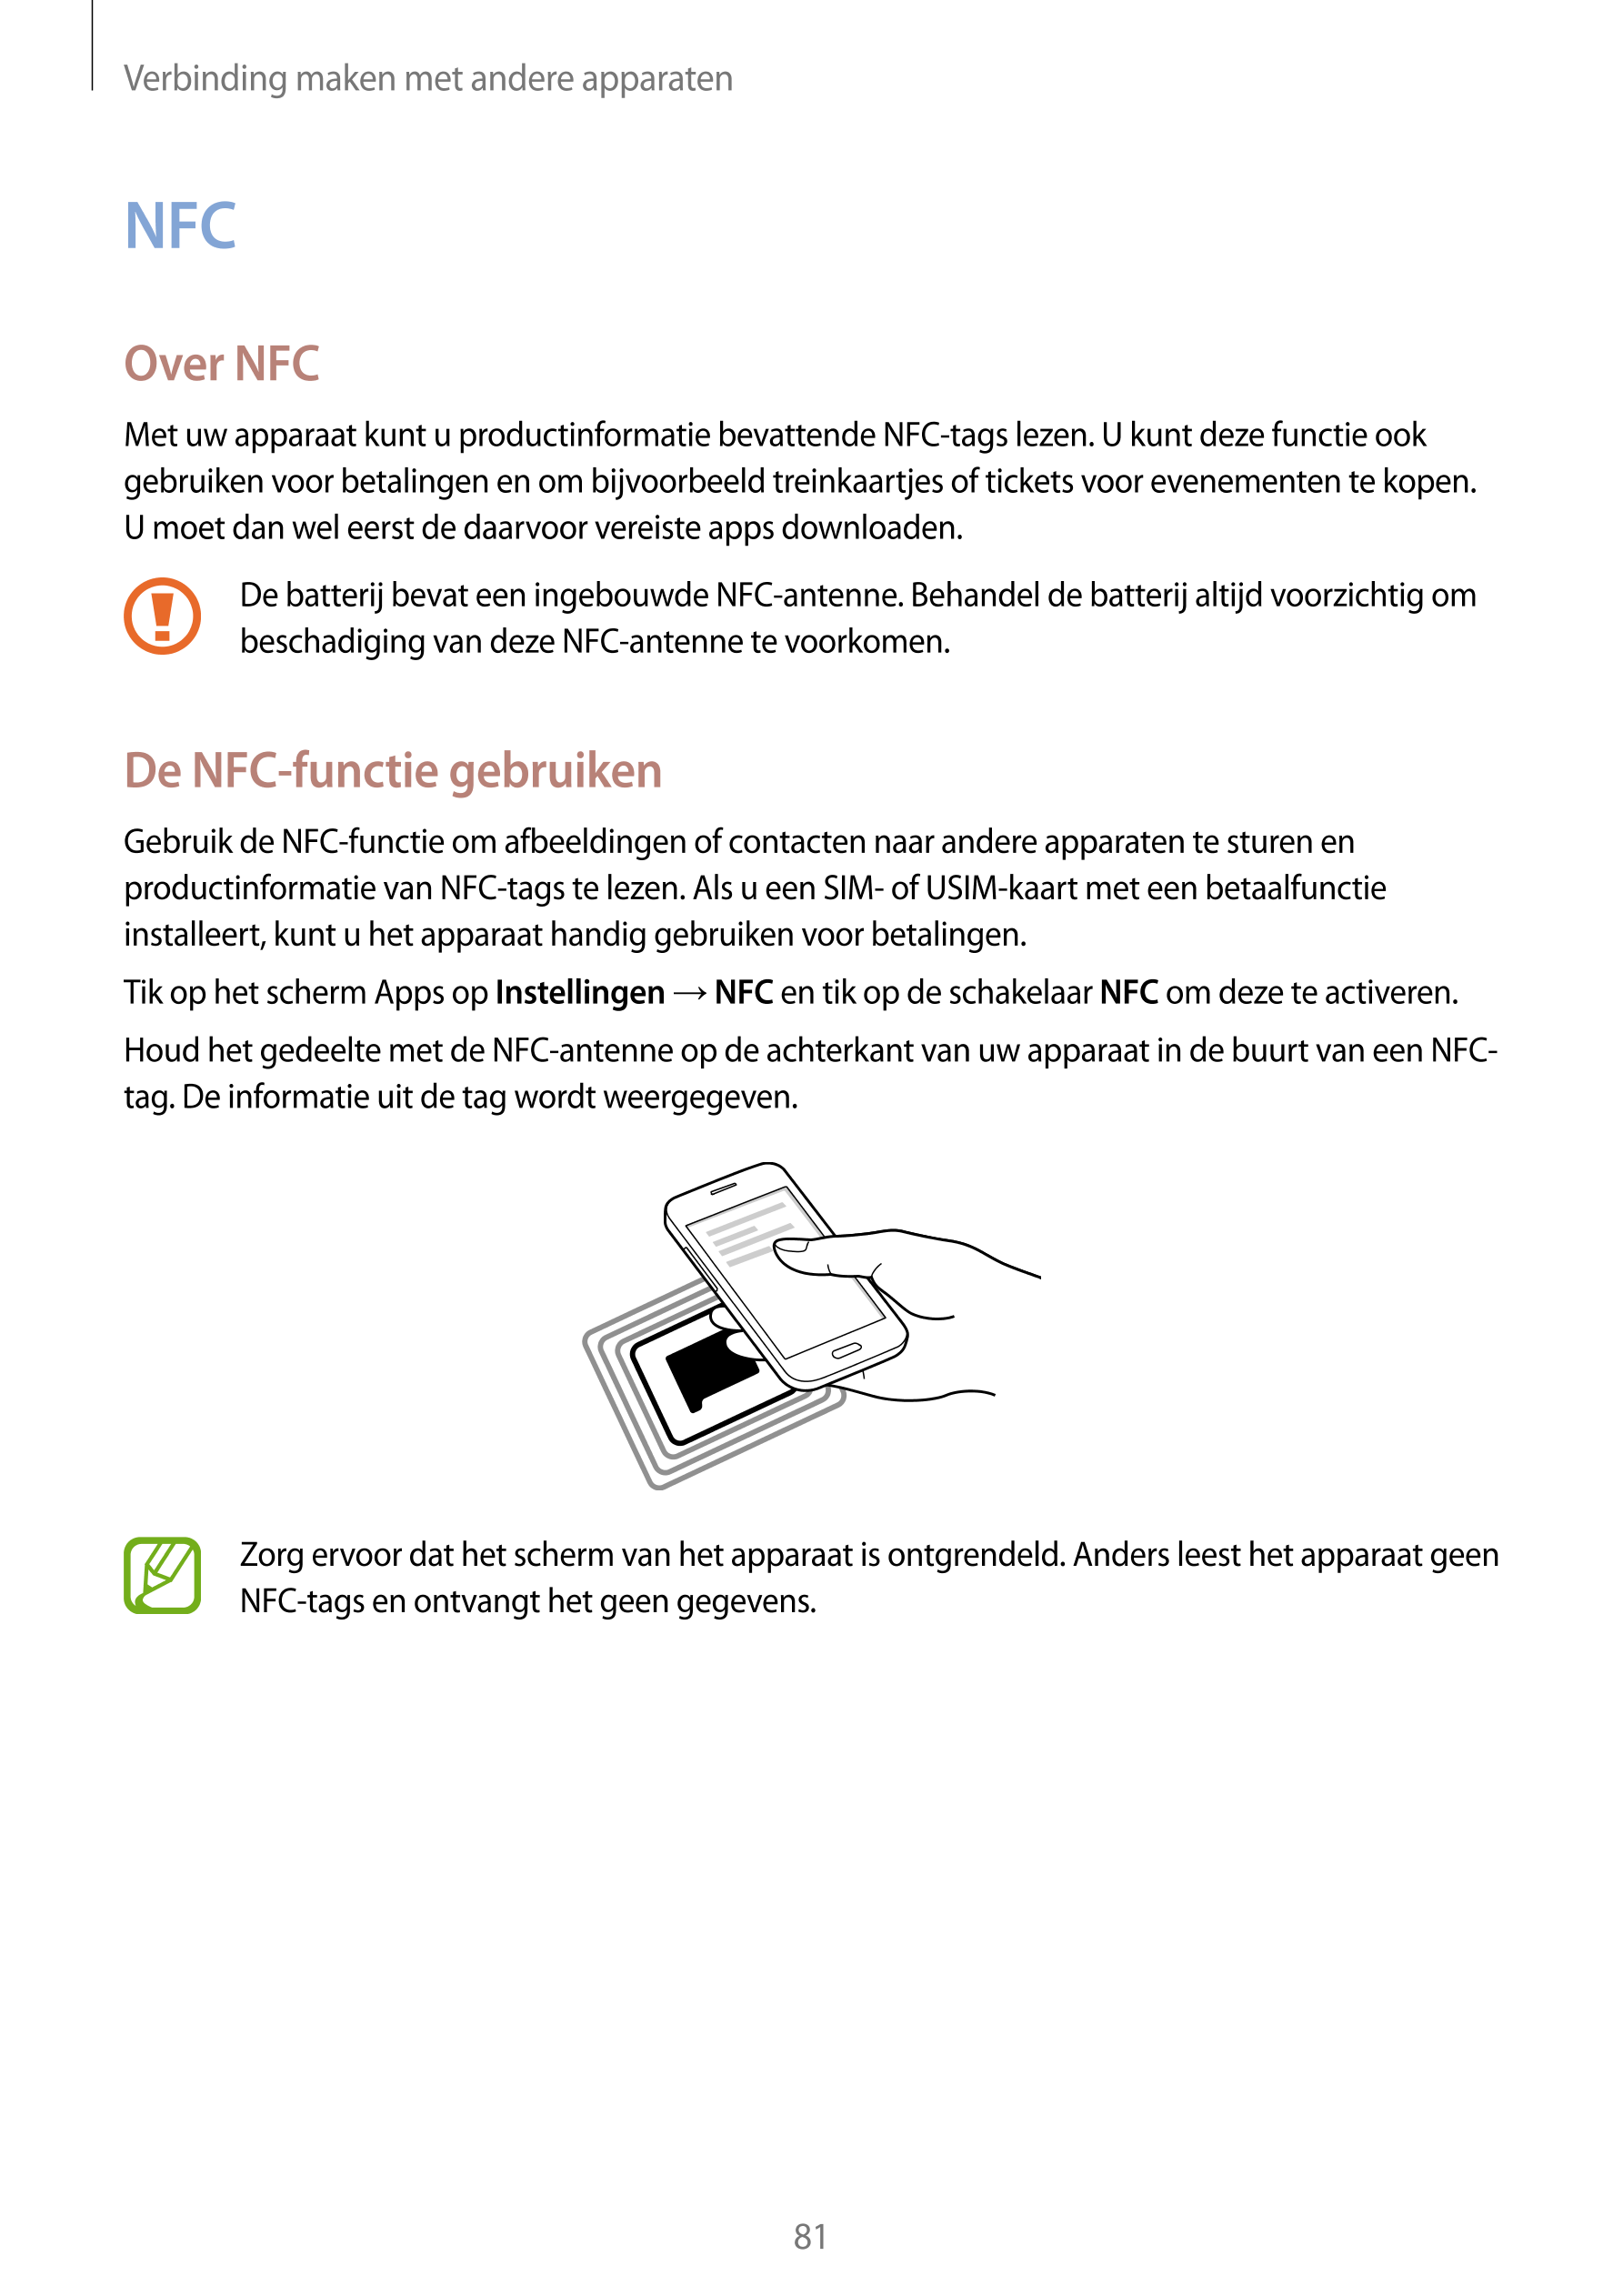 Verbinding maken met andere apparaten
NFC
Over NFC
Met uw apparaat kunt u productinformatie bevattende NFC-tags lezen. U kunt de